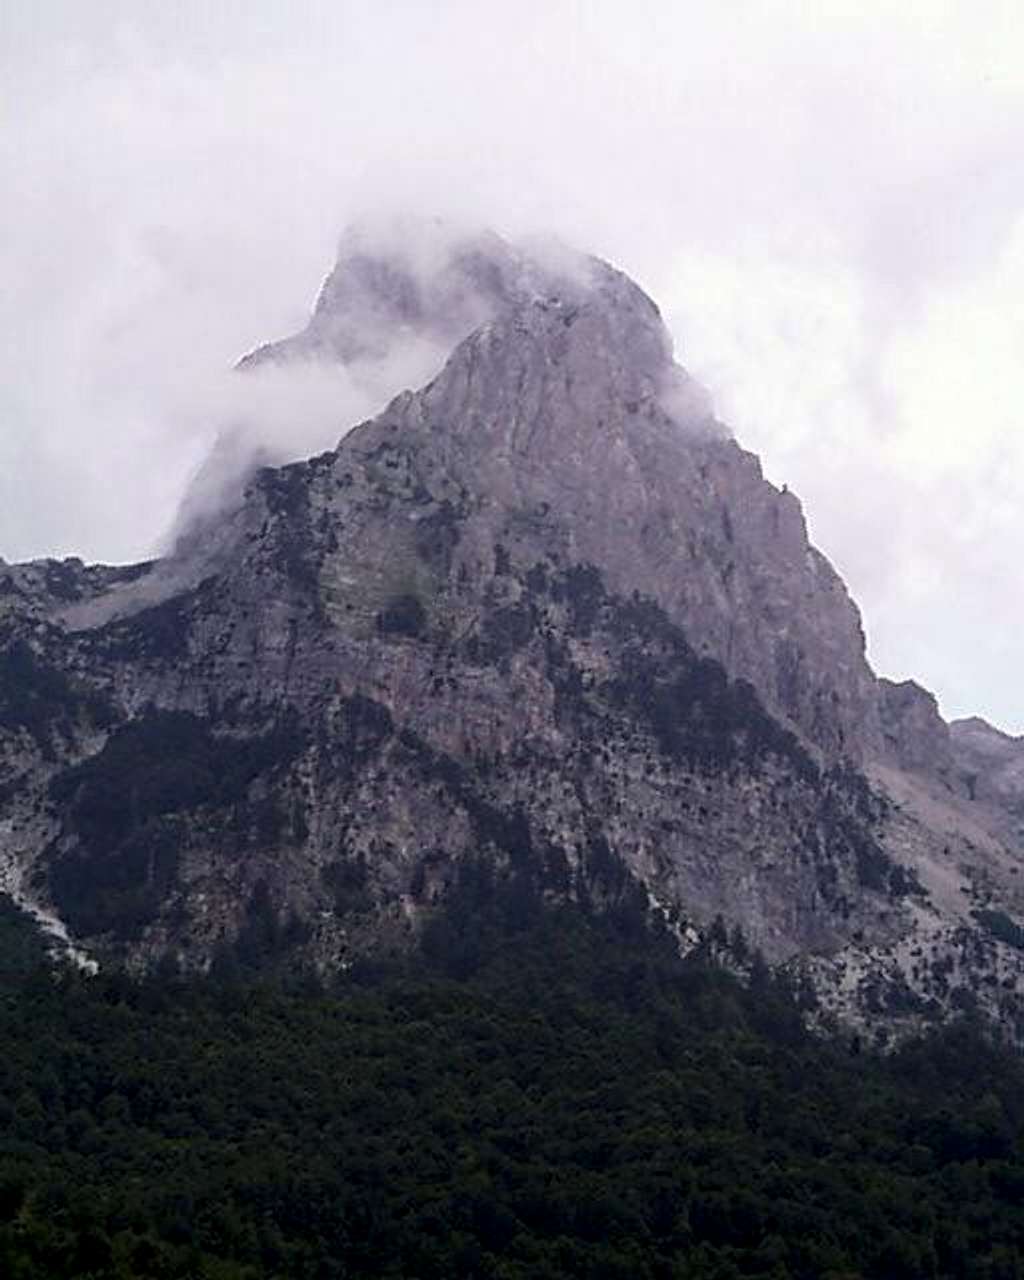 Mt. Qetat